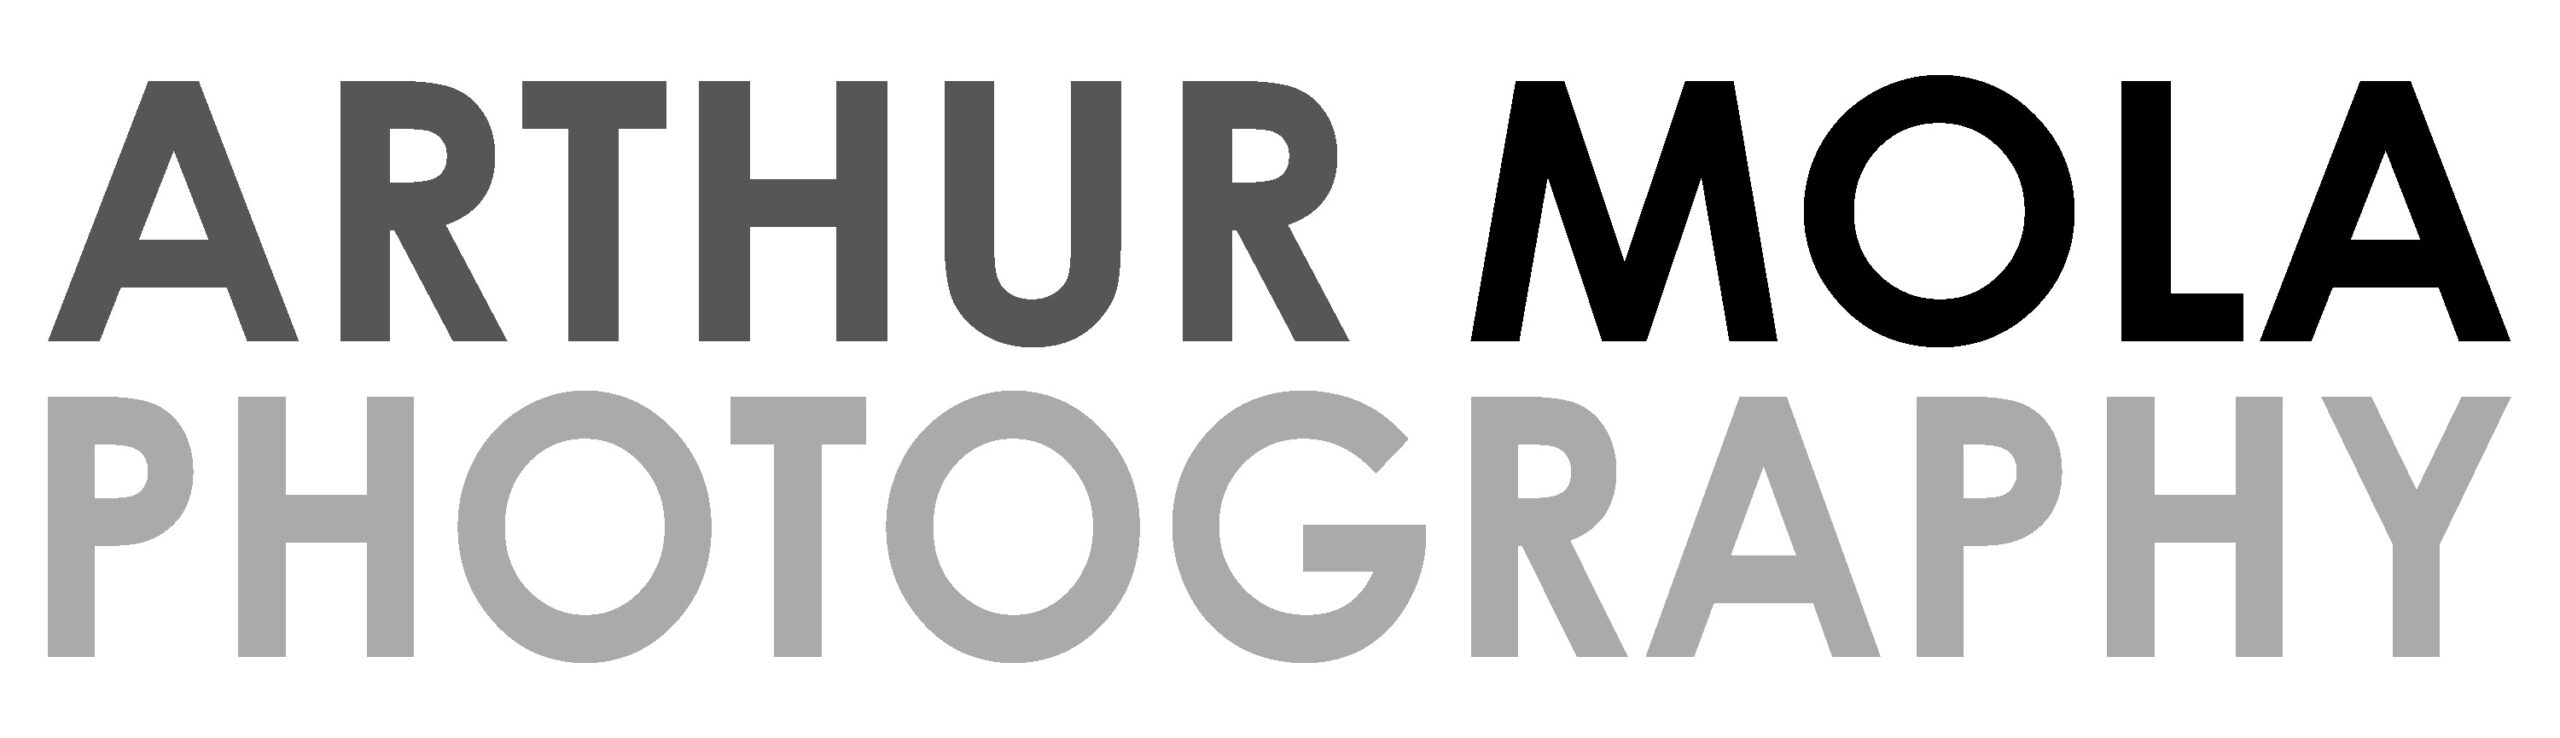 Arthur Mola Photography logo